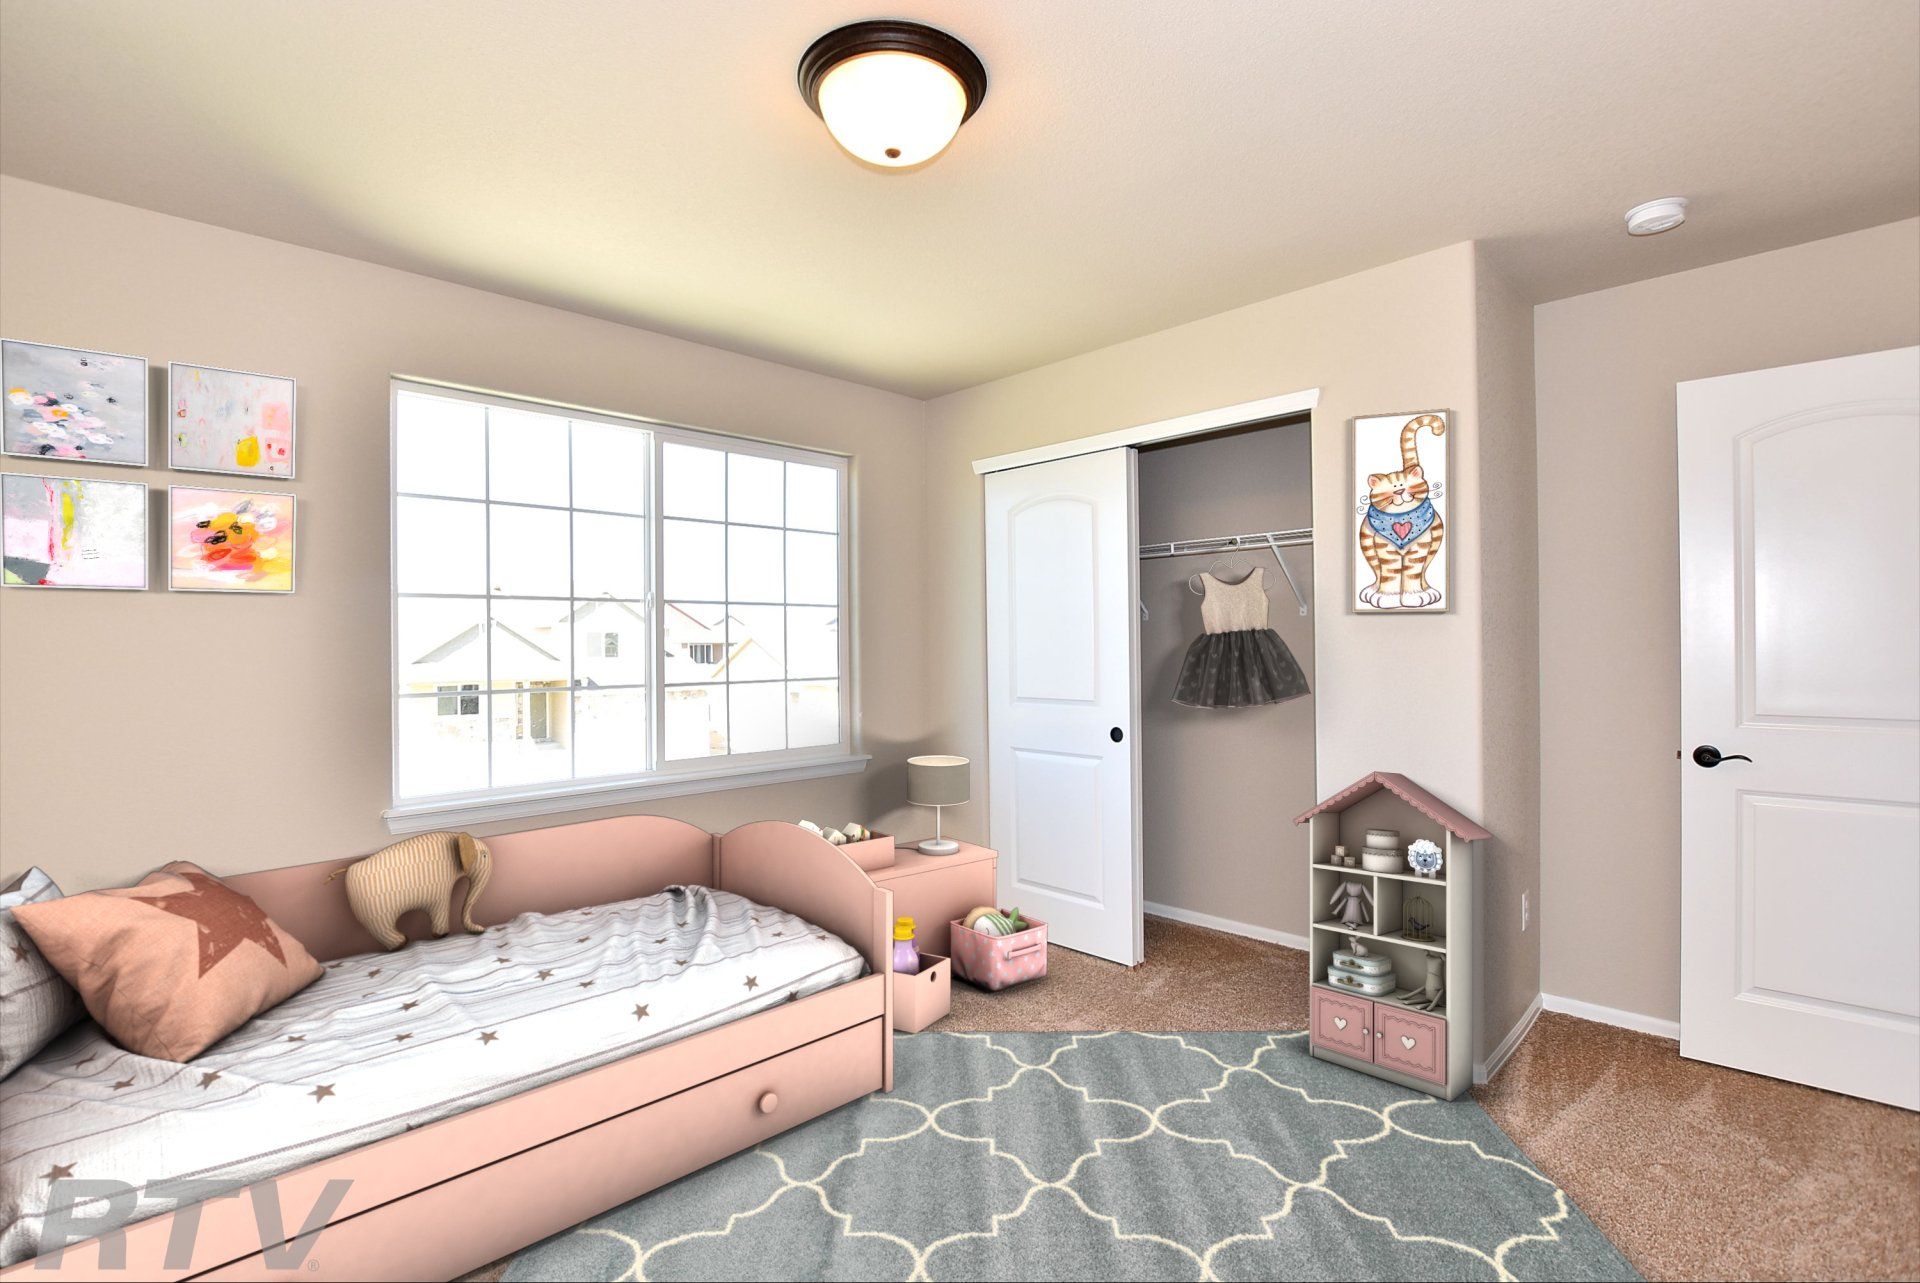 Bedroom 2 in The Glendo model